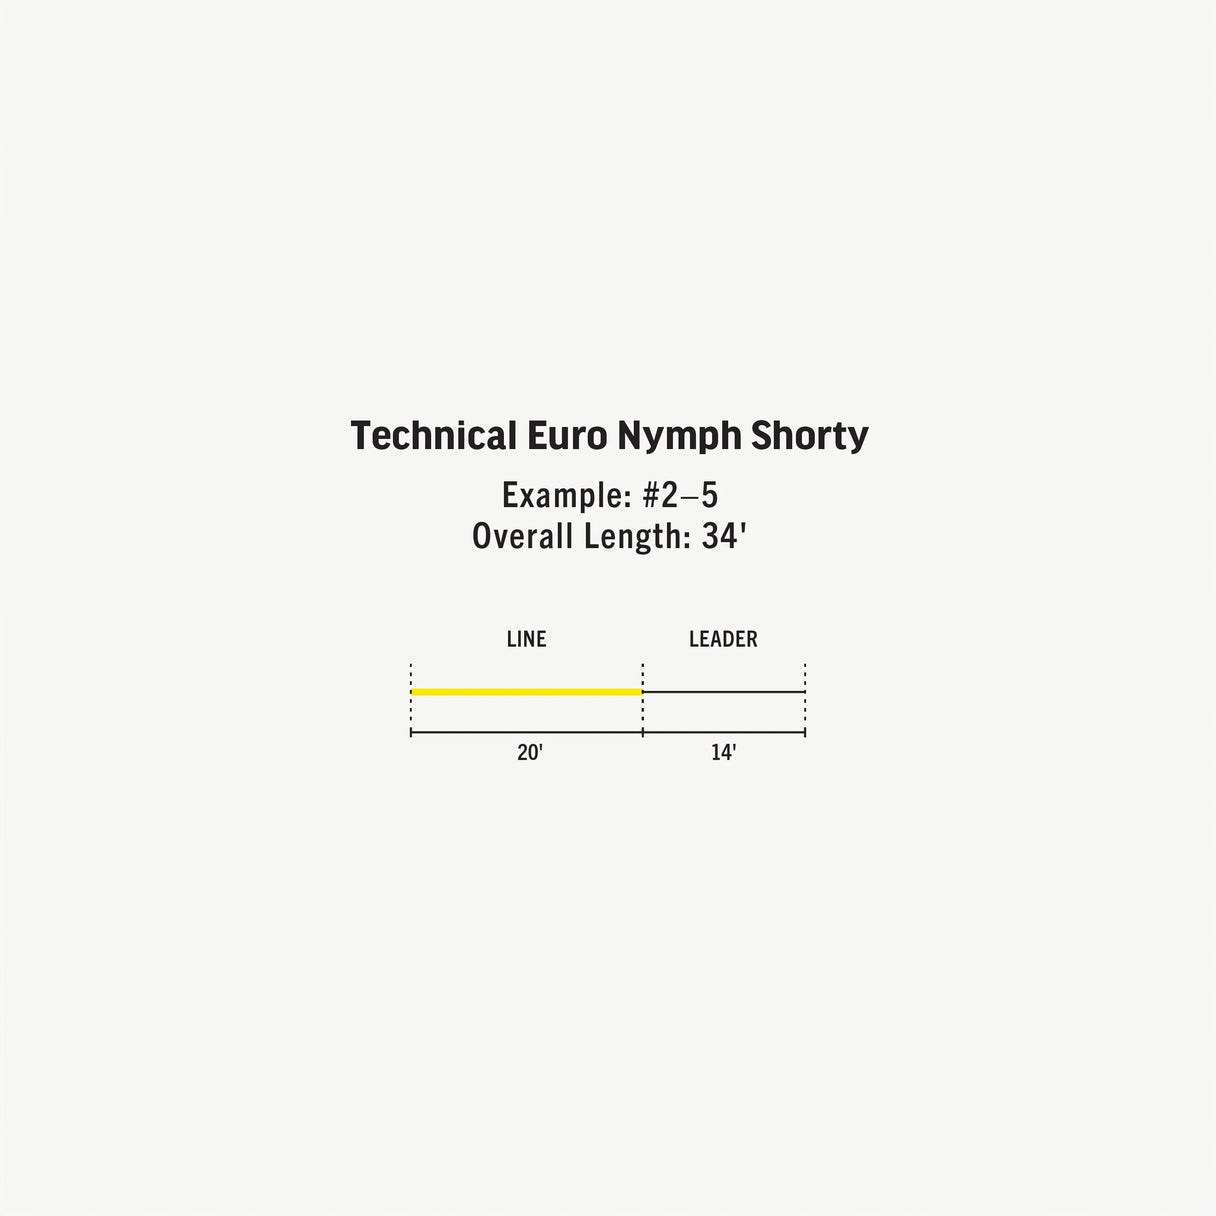 RIO Technical Euro Nymph Shorty